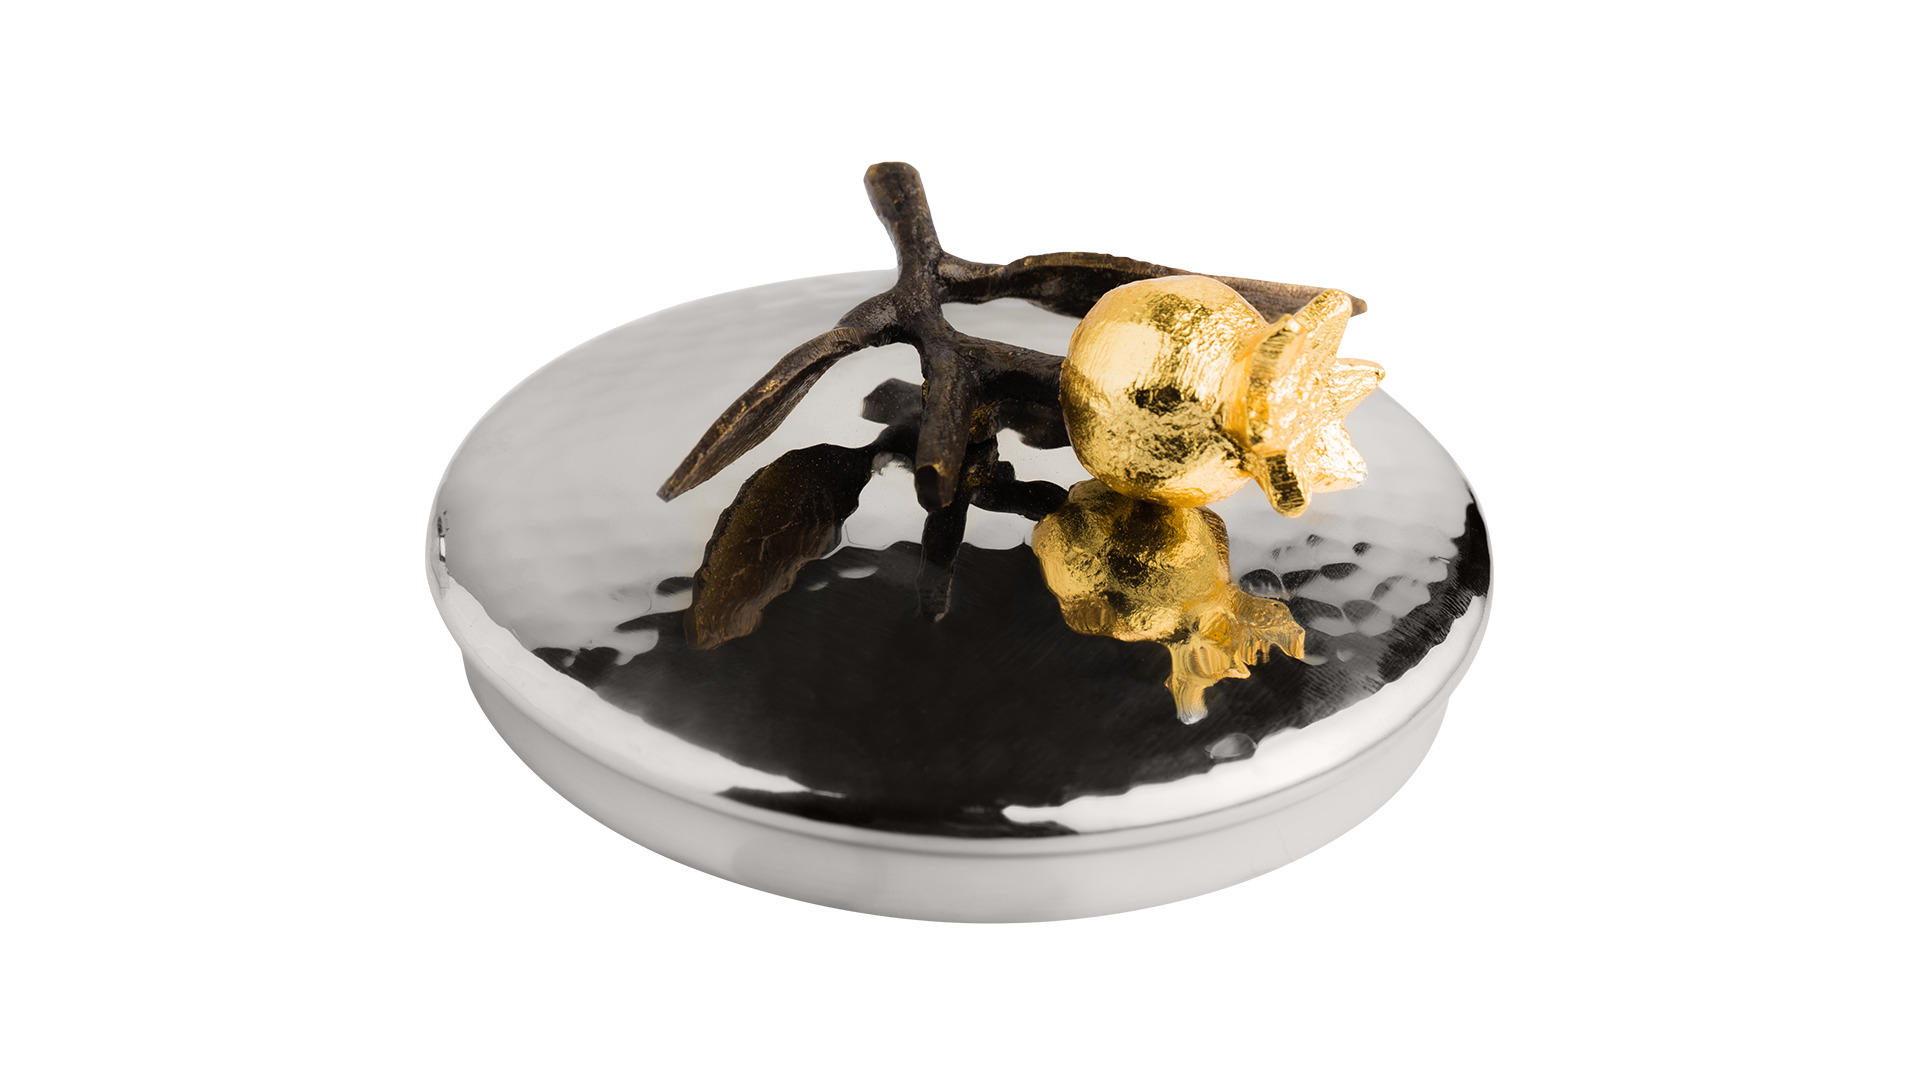 Сахарница с ложкой Michael Aram Гранат 11 см, сталь, оксидирование, золотая краска